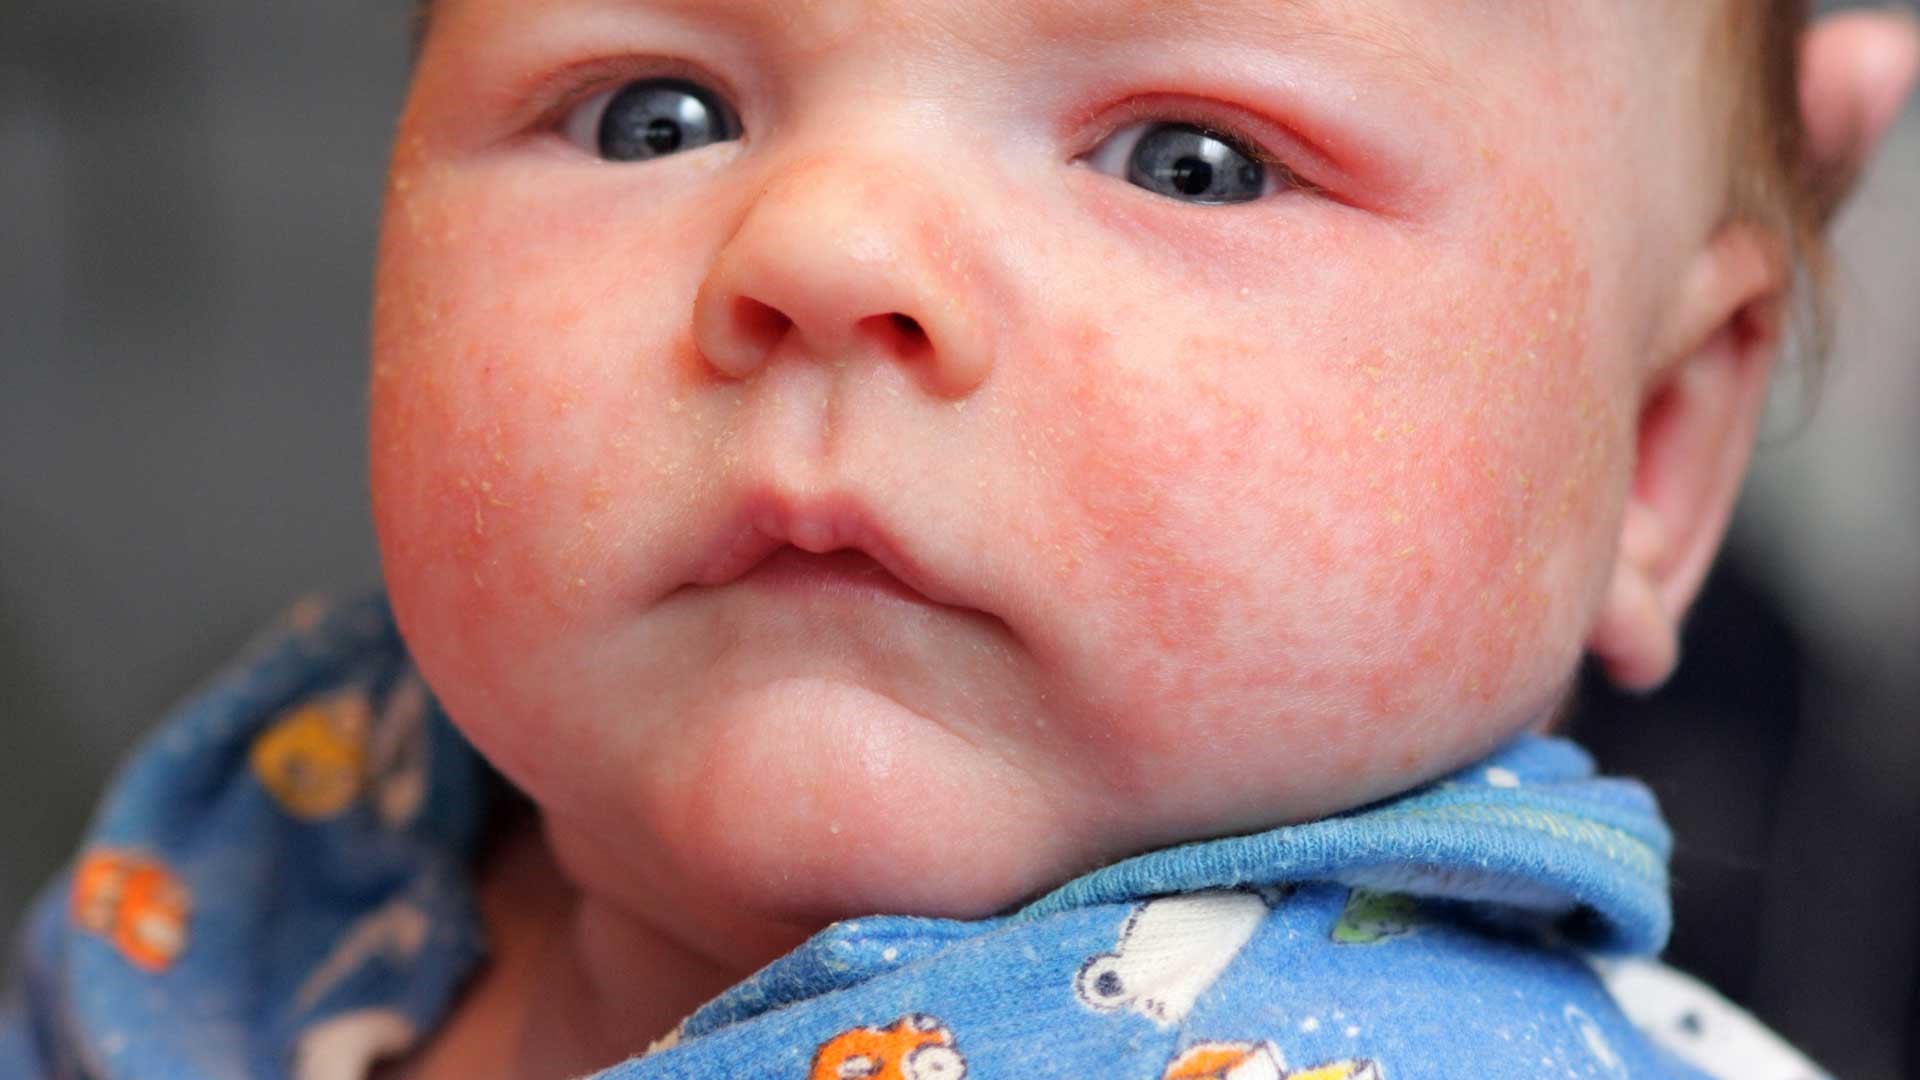 потничка у новорожденных фото на лице